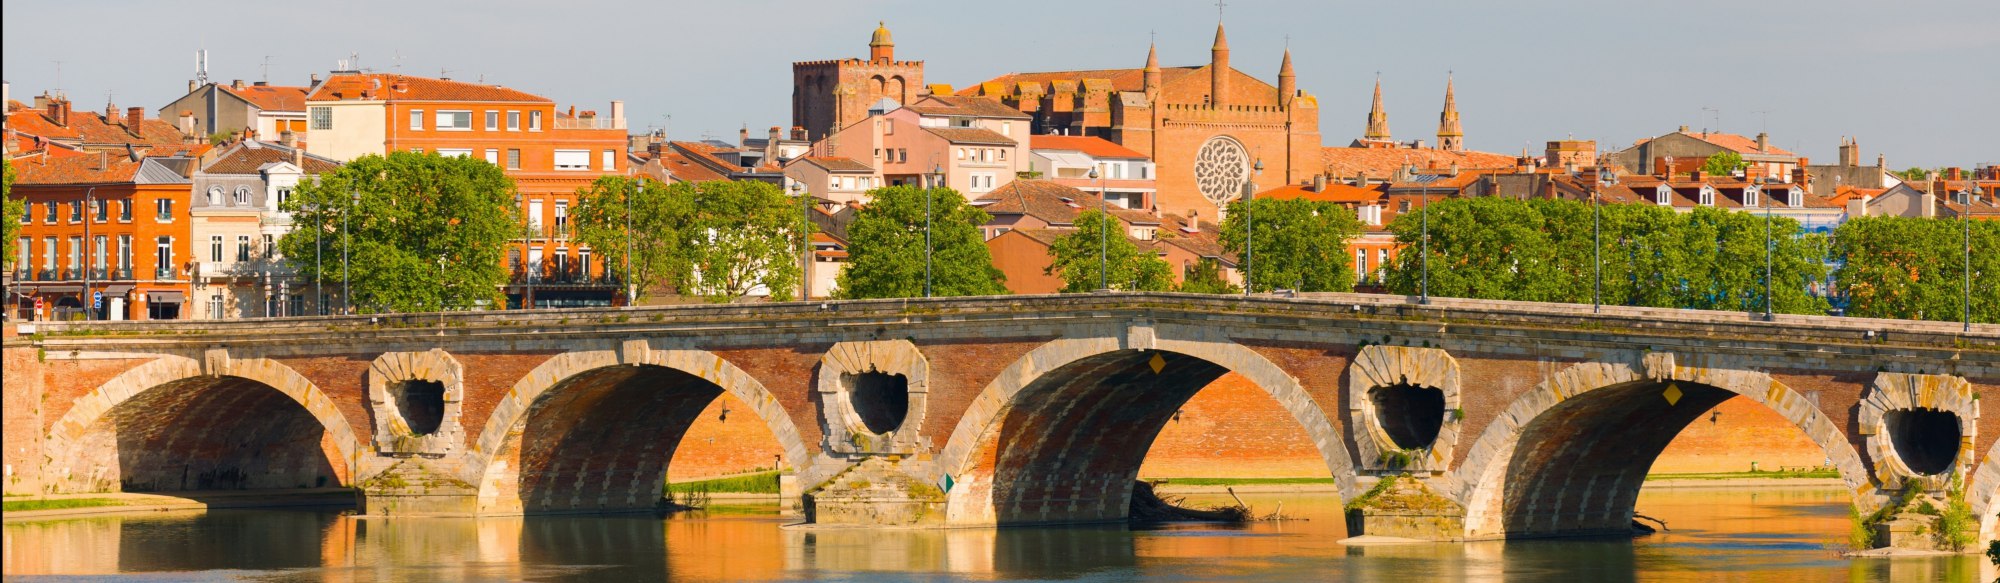 Visuel de Toulouse